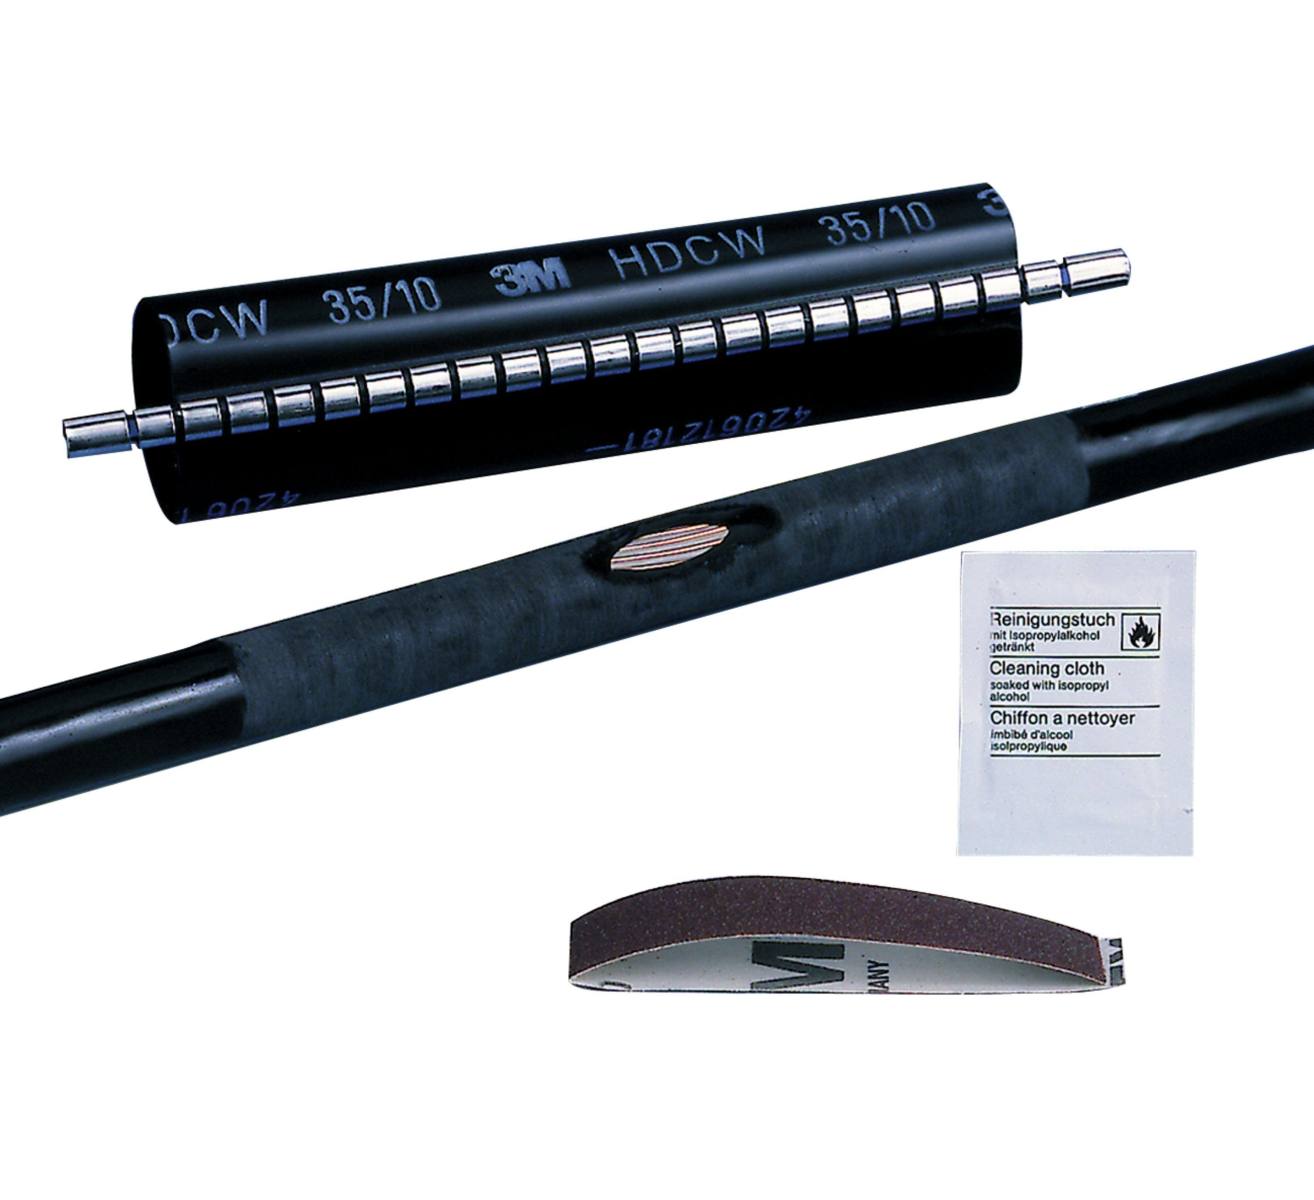  3M HDCW lämpökutistuva korjausholkki, musta, 80/25 mm, 500 mm